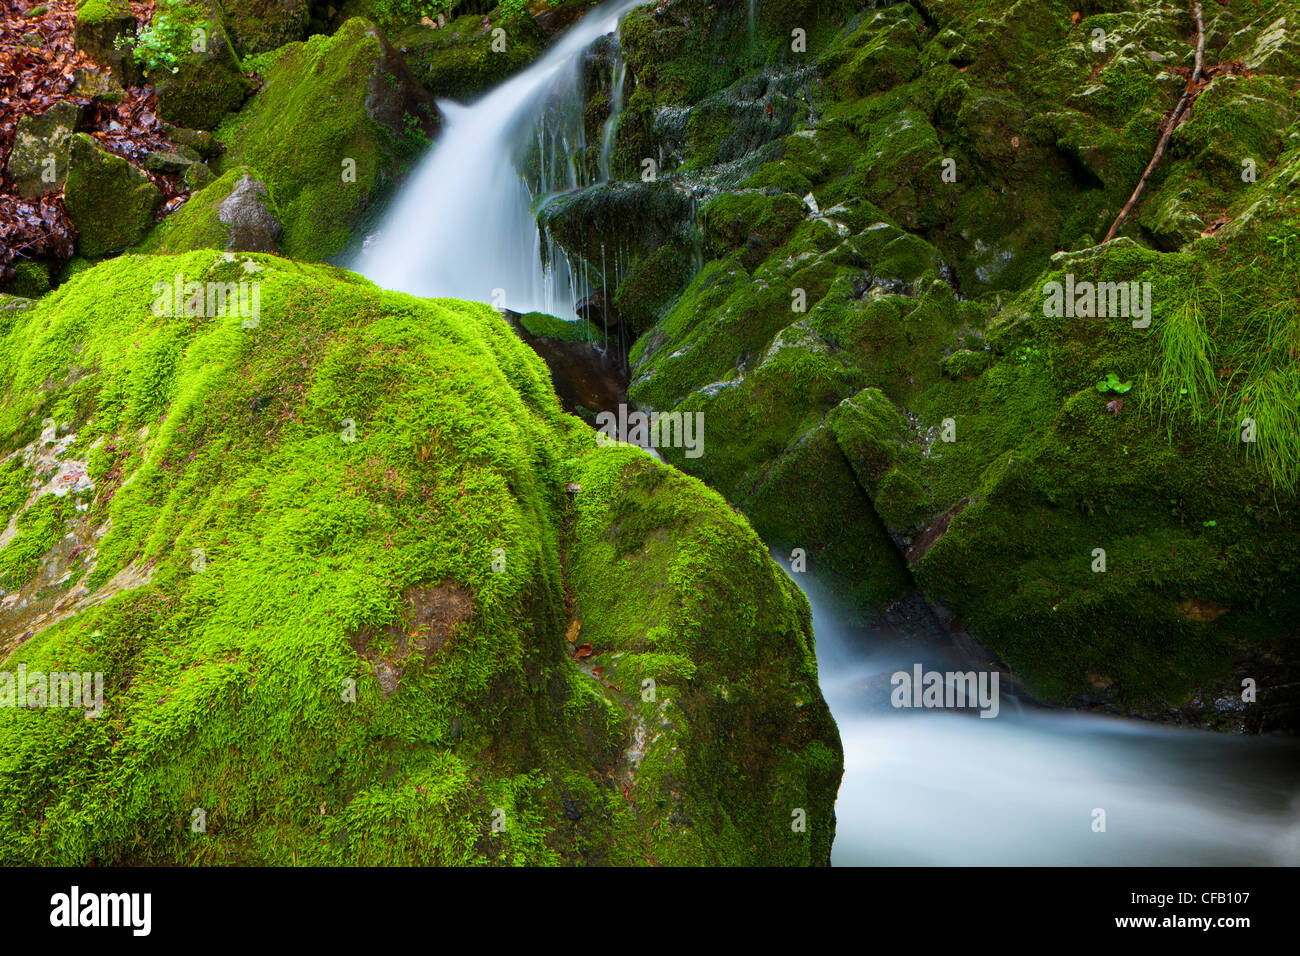 Brüelbach, Switzerland, canton Appenzell, Innerrhoden, creek, forest brook, rock, cliff, moss, nature Stock Photo